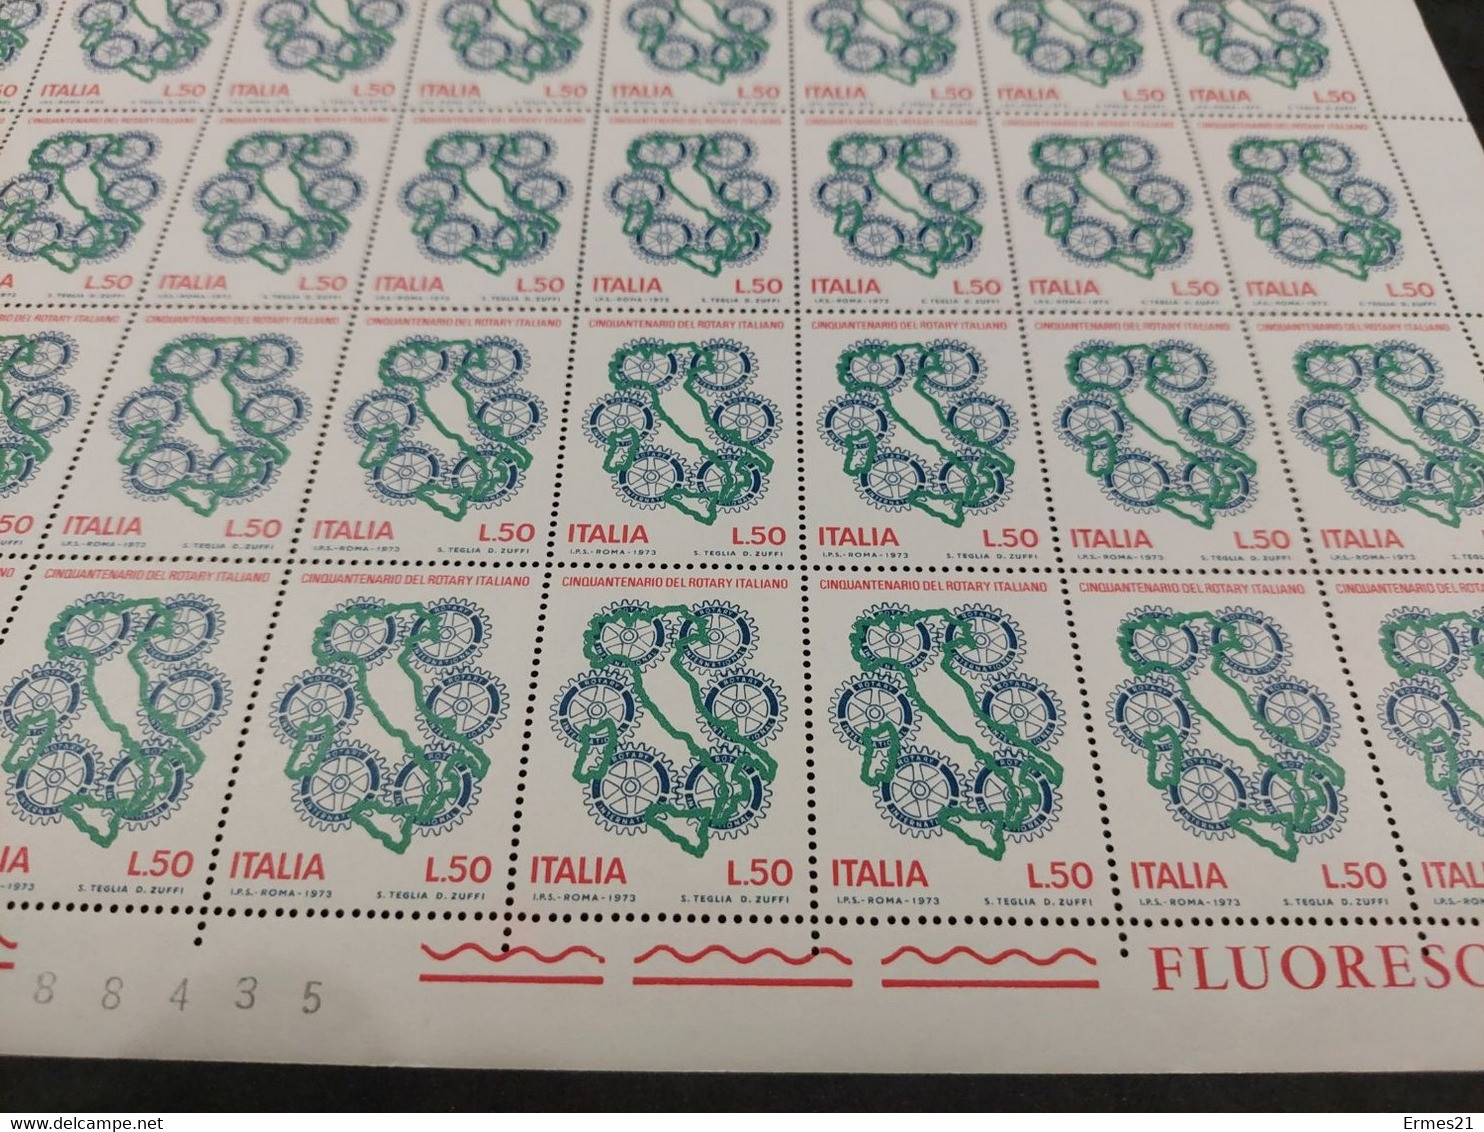 Francobolli Cinquantenario Del Rotary Italiano. 1973. Valore 50 Lire. Nuovi. Condizioni Eccellenti. Foglio Intero Di 50 - Complete Vellen